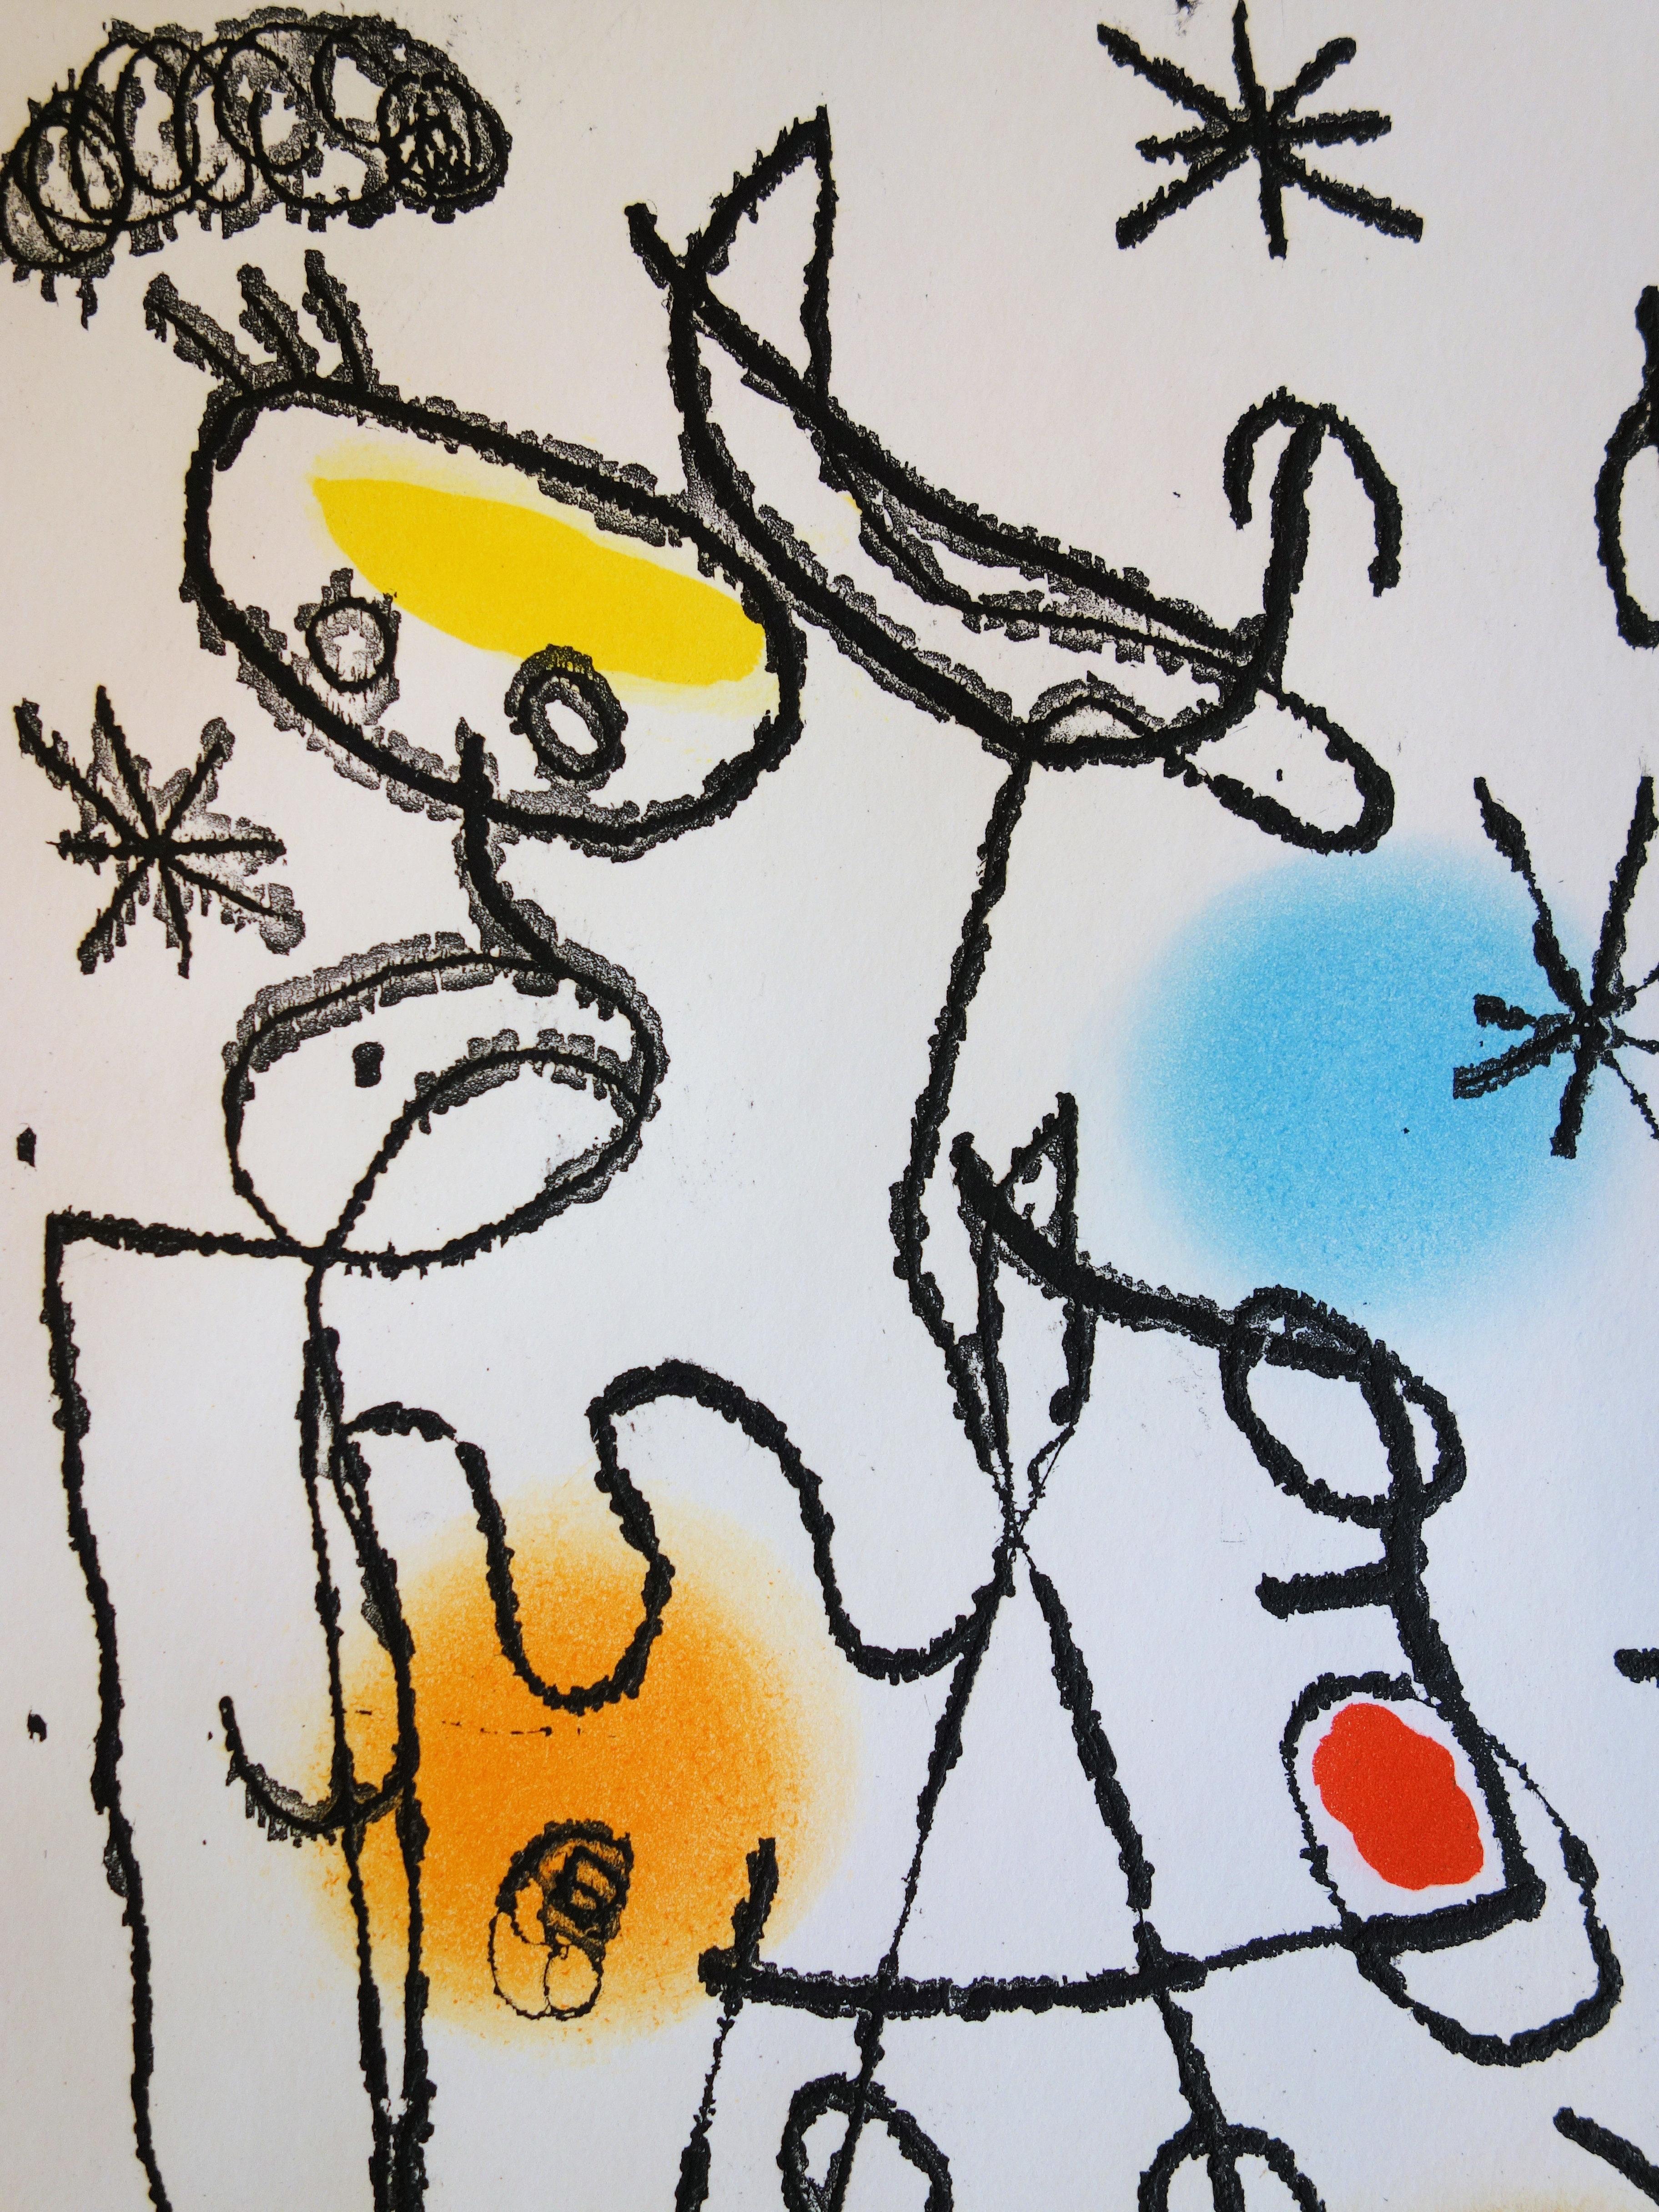 Paroles Peintes - Original color Etching and Aquatint - 1967 - Abstract Print by Joan Miró